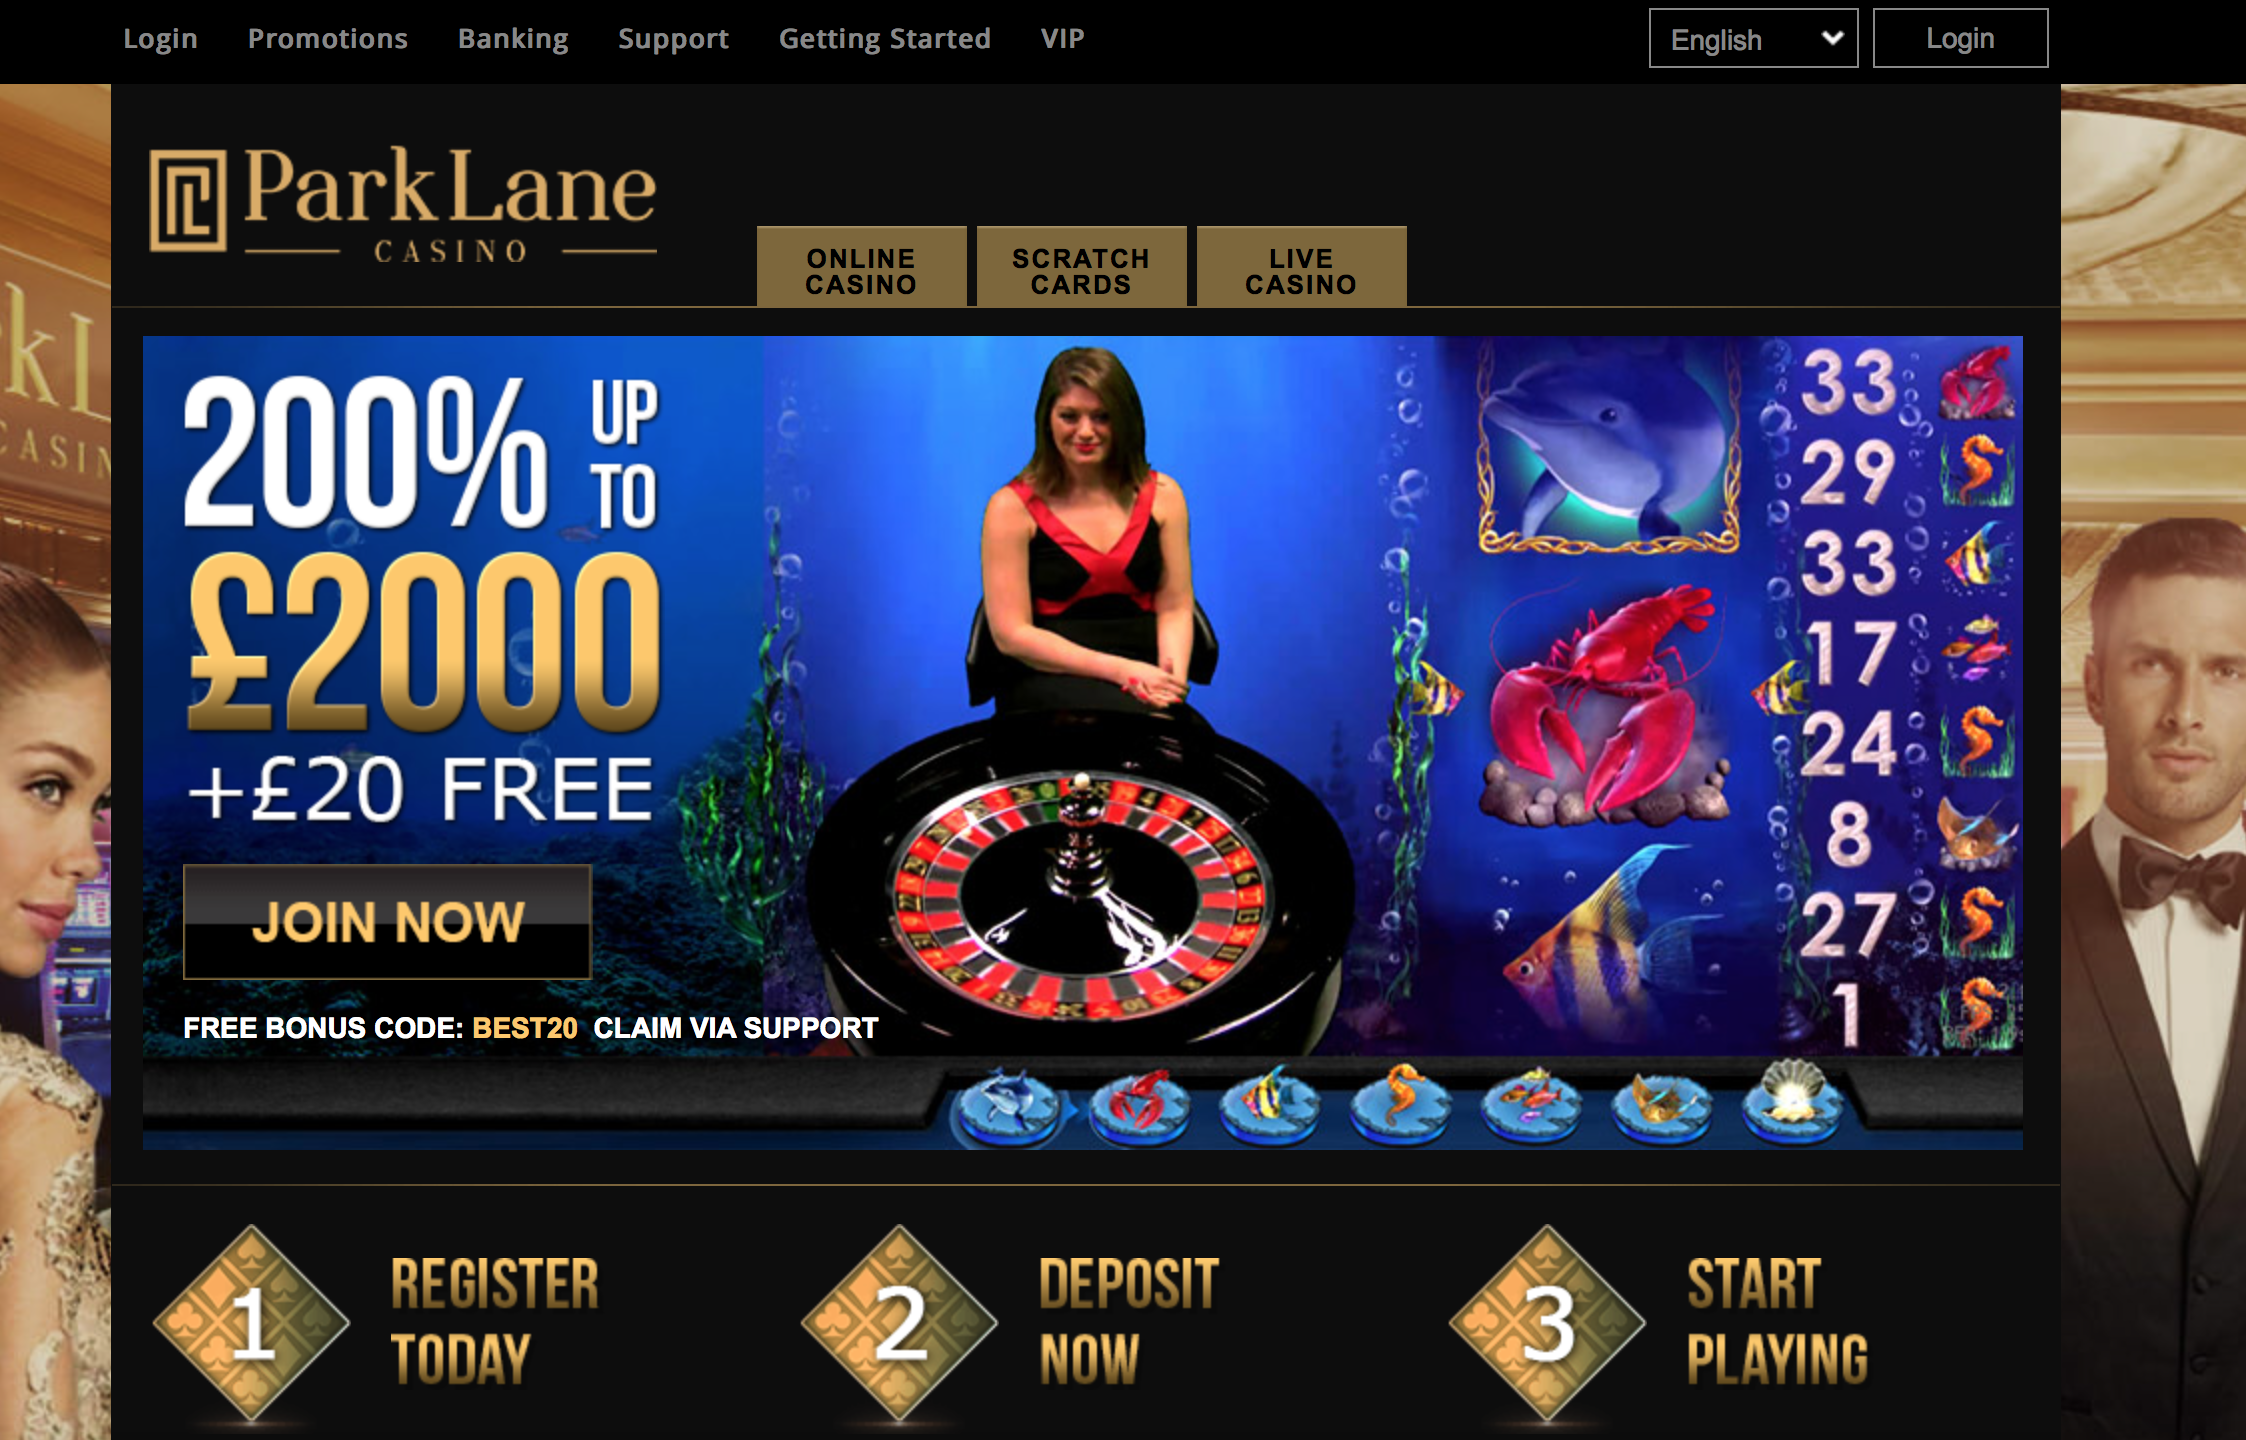 Parklane casino no deposit bonus code 2019